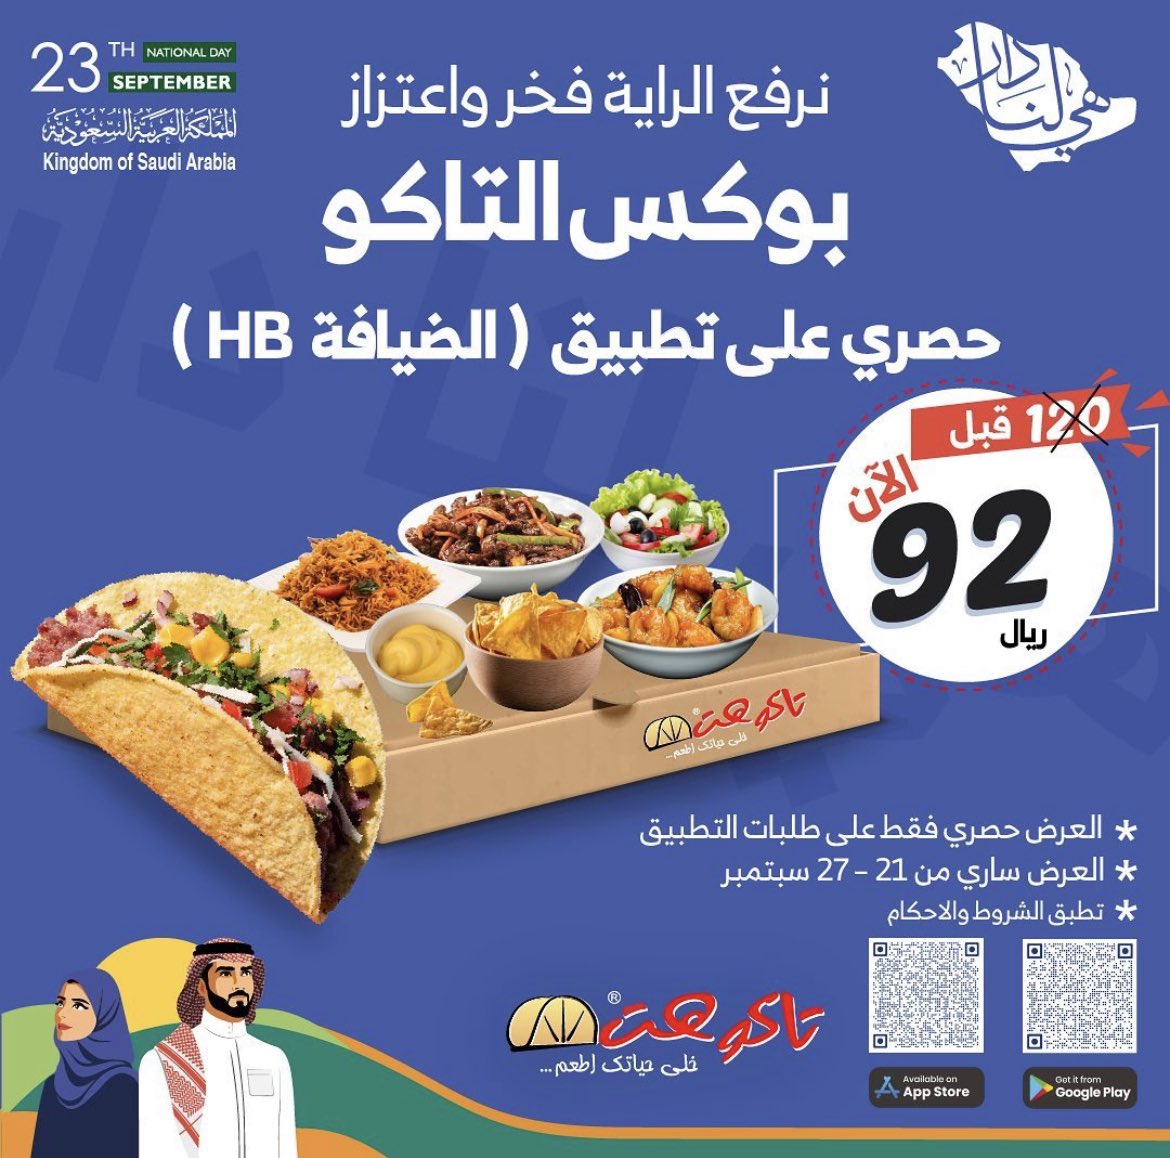 Fc9m1vNXkAMs1Ju - عروض اليوم الوطني 92 : عروض مطاعم السعودية (محدث بالعروض الجديدة)